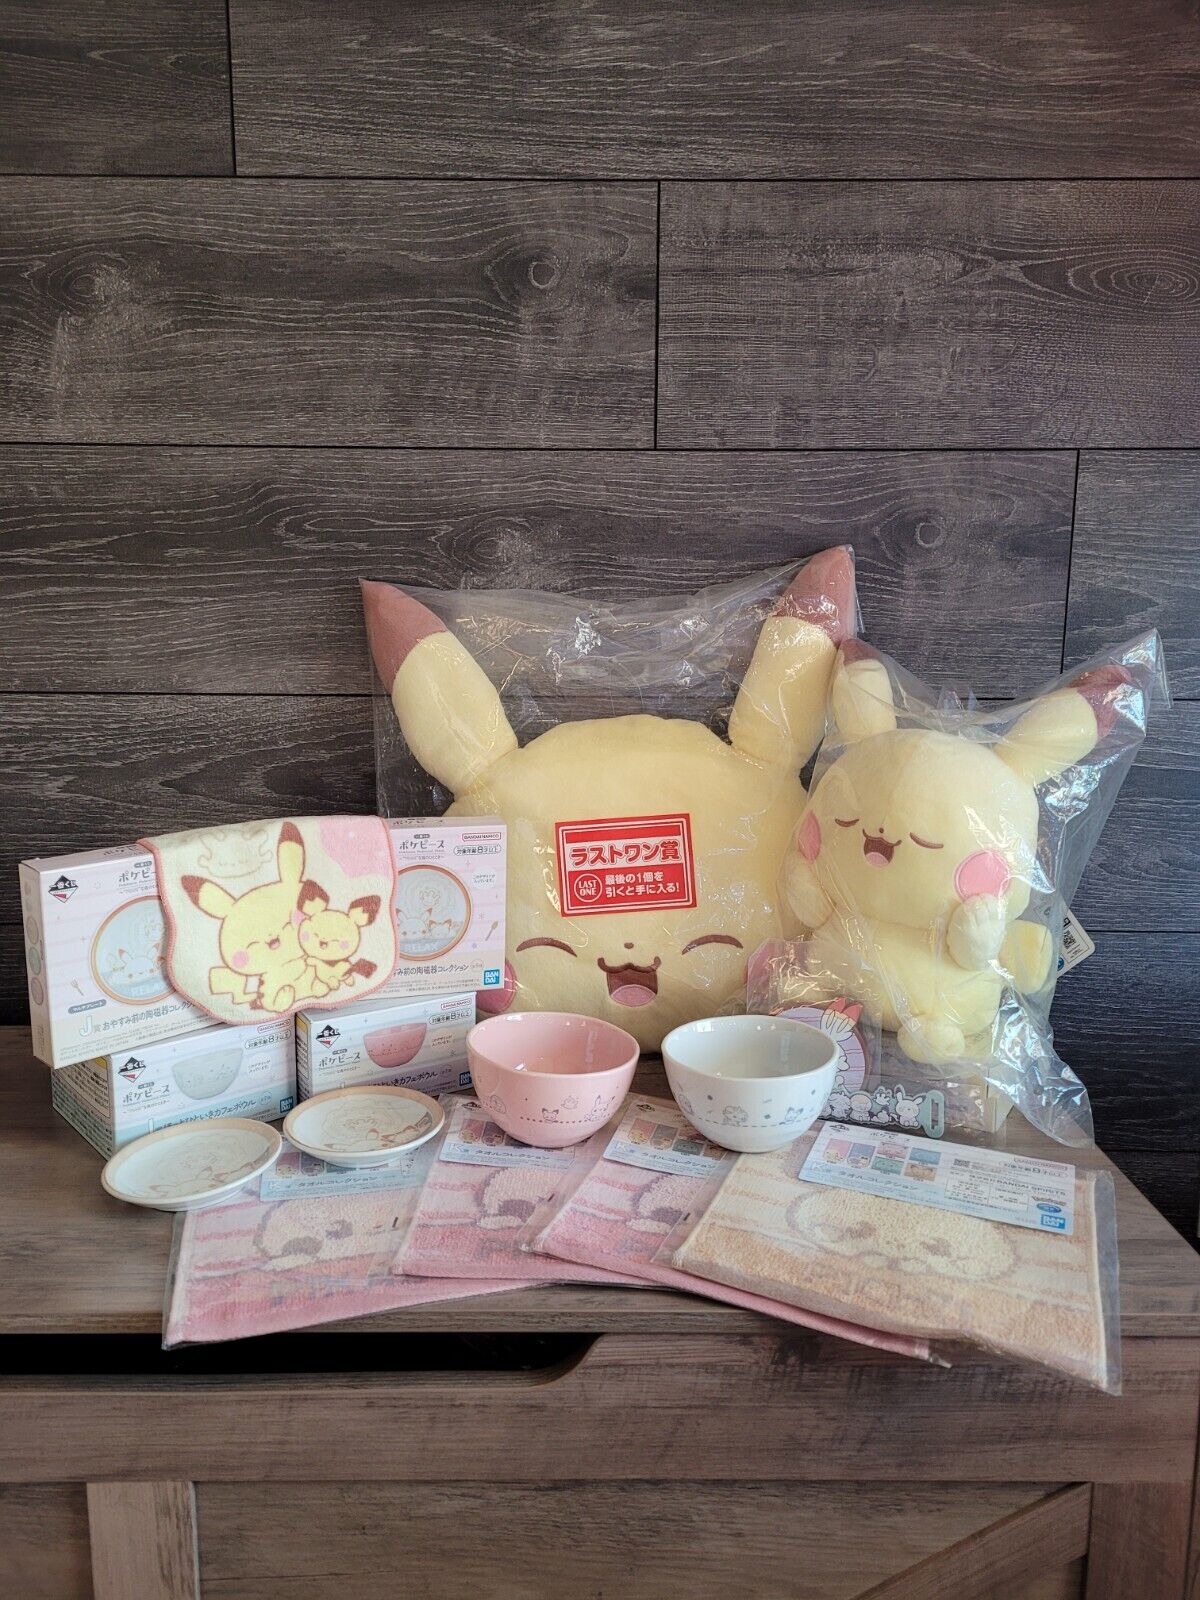 Pikachu Pokepeace Ichiban Kuji Prize Bundle